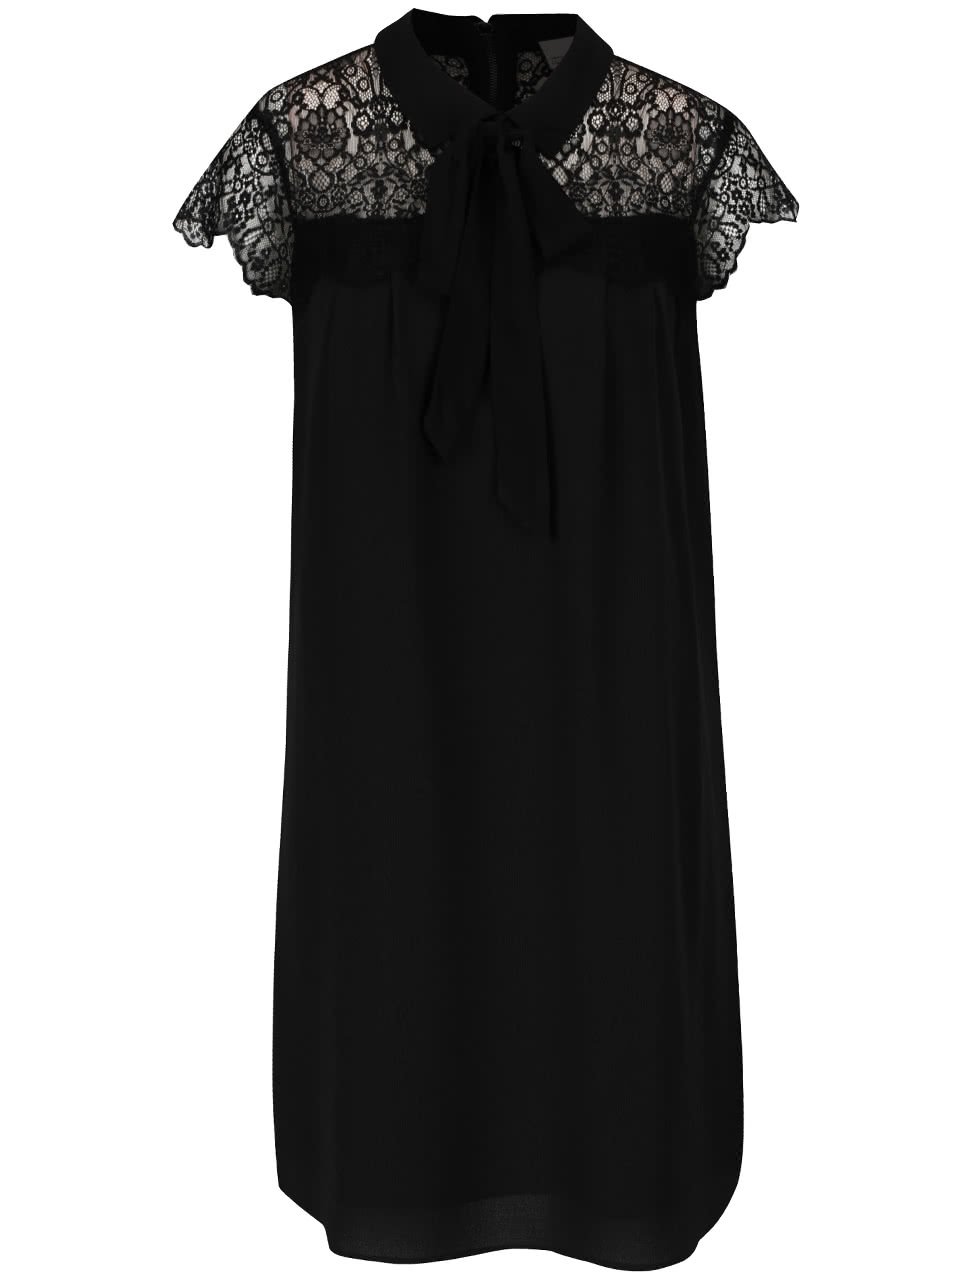 Černé šaty s krajkovým dekoltem a vázankou Vero Moda Marie